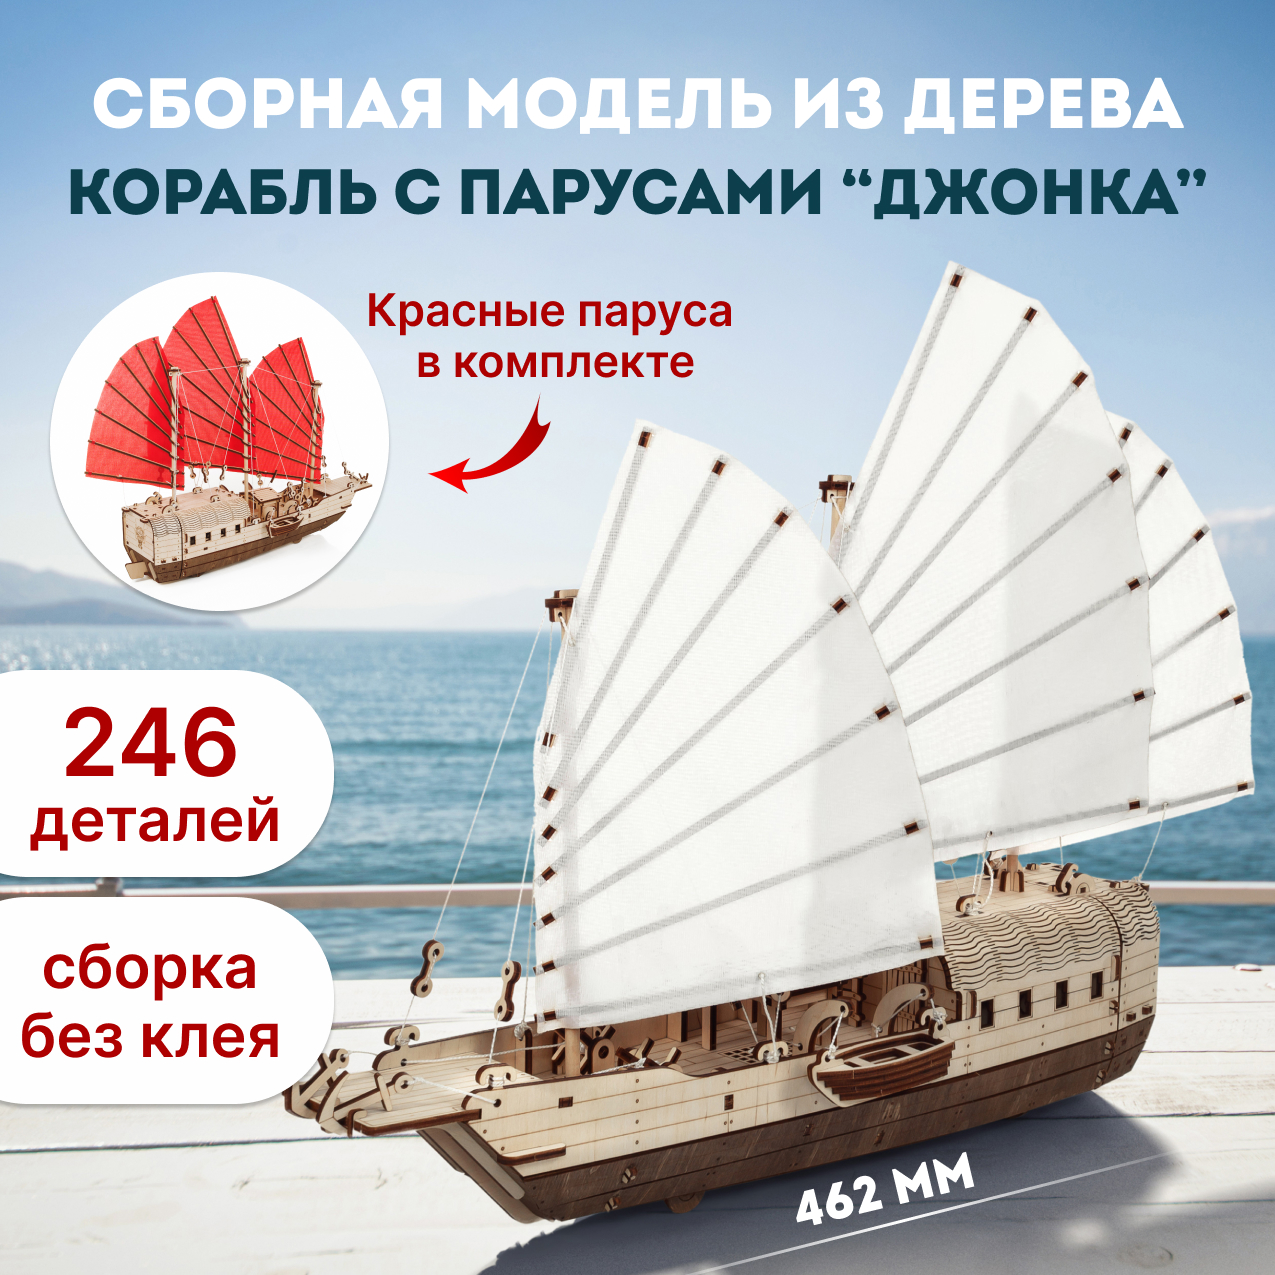 Сборная модель из дерева Eco Wood Art, Корабль c парусами Джонка, 246 эл. rezark корабль китайский парусник